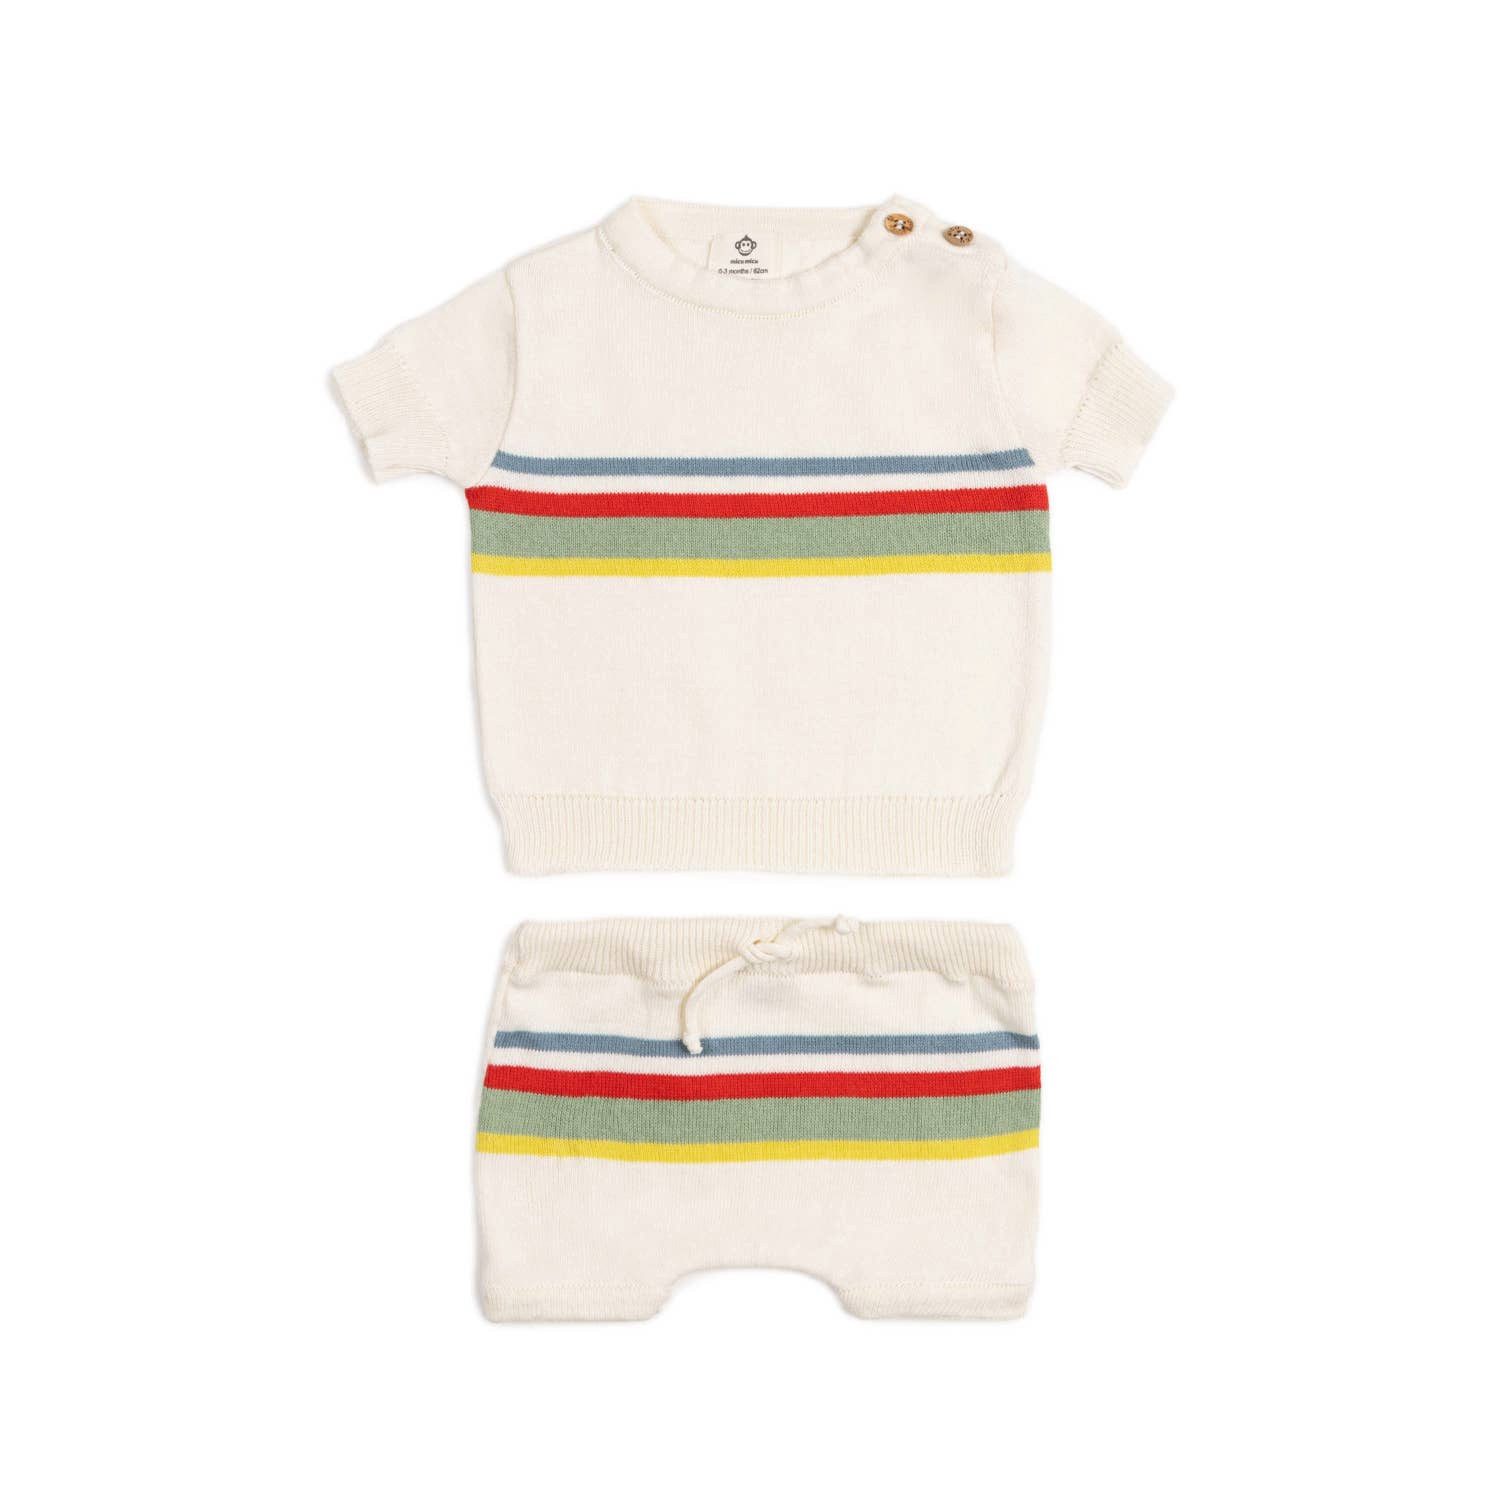 suebidou Shirt & Shorts Baby Set Strick Neugeborenen-Set 2 teilig Süßes Design mit Kontraststreifen